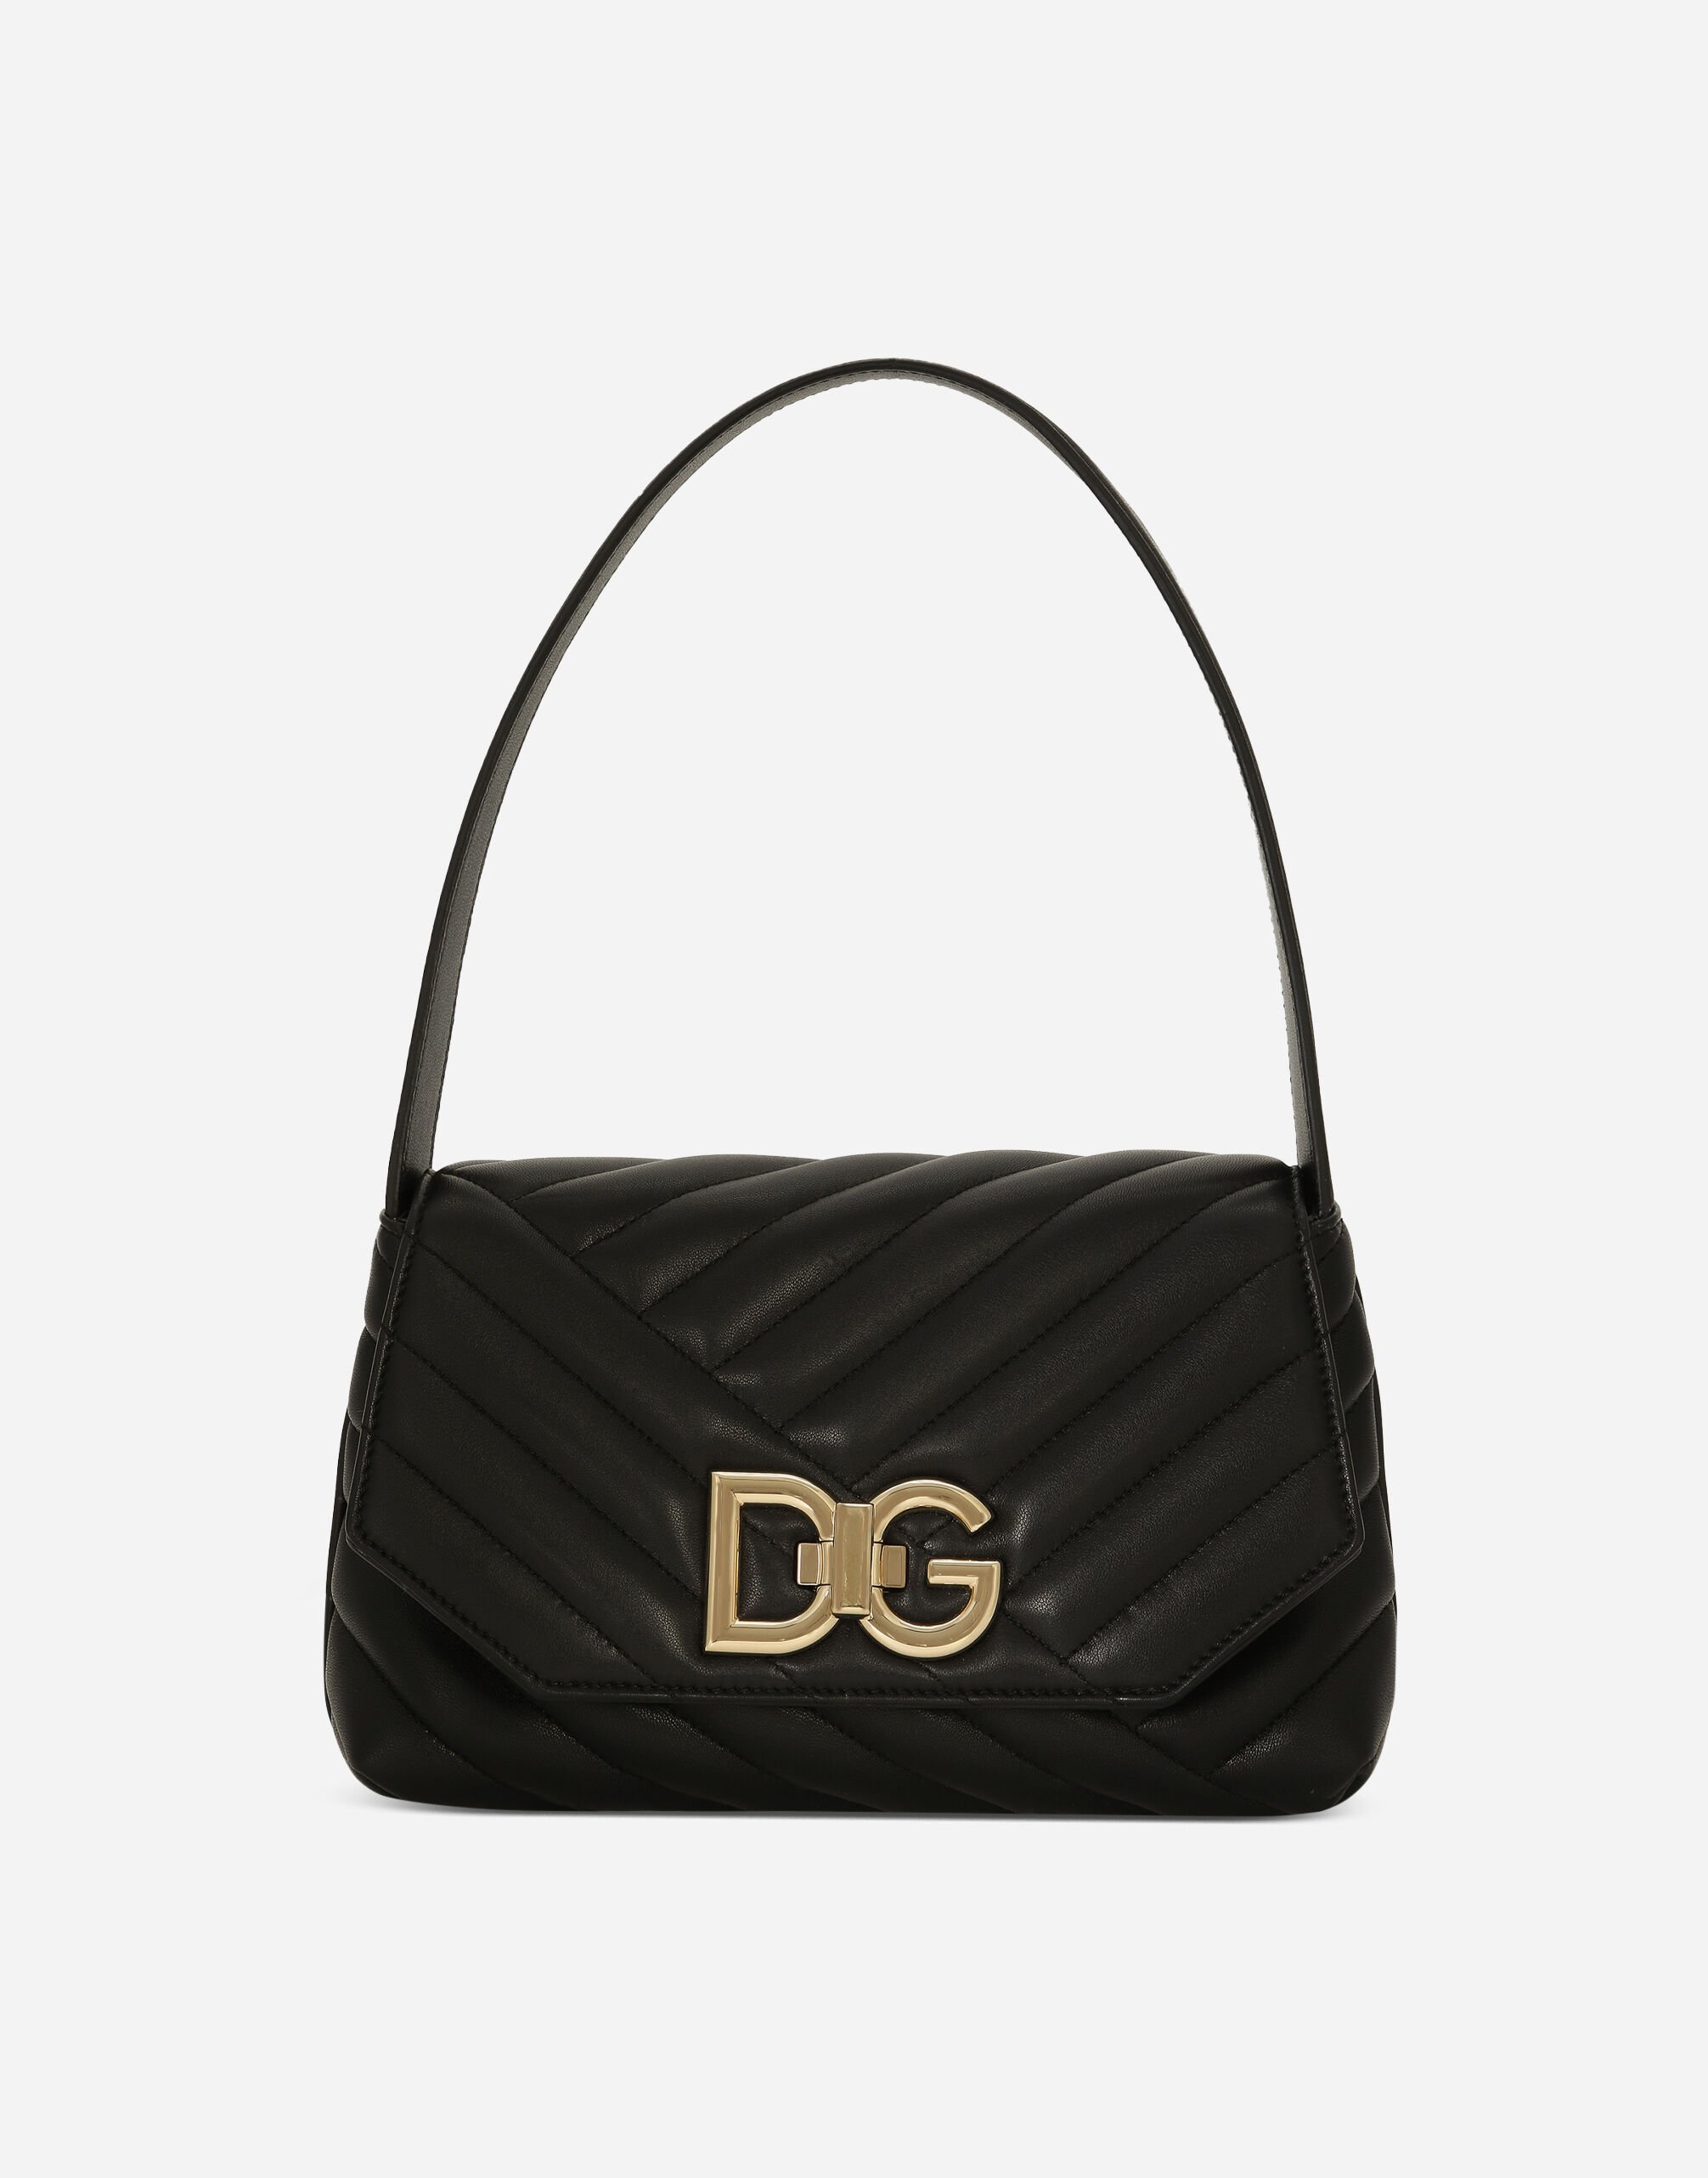 Dolce & Gabbana Lop shoulder bag Black BB7541AF984